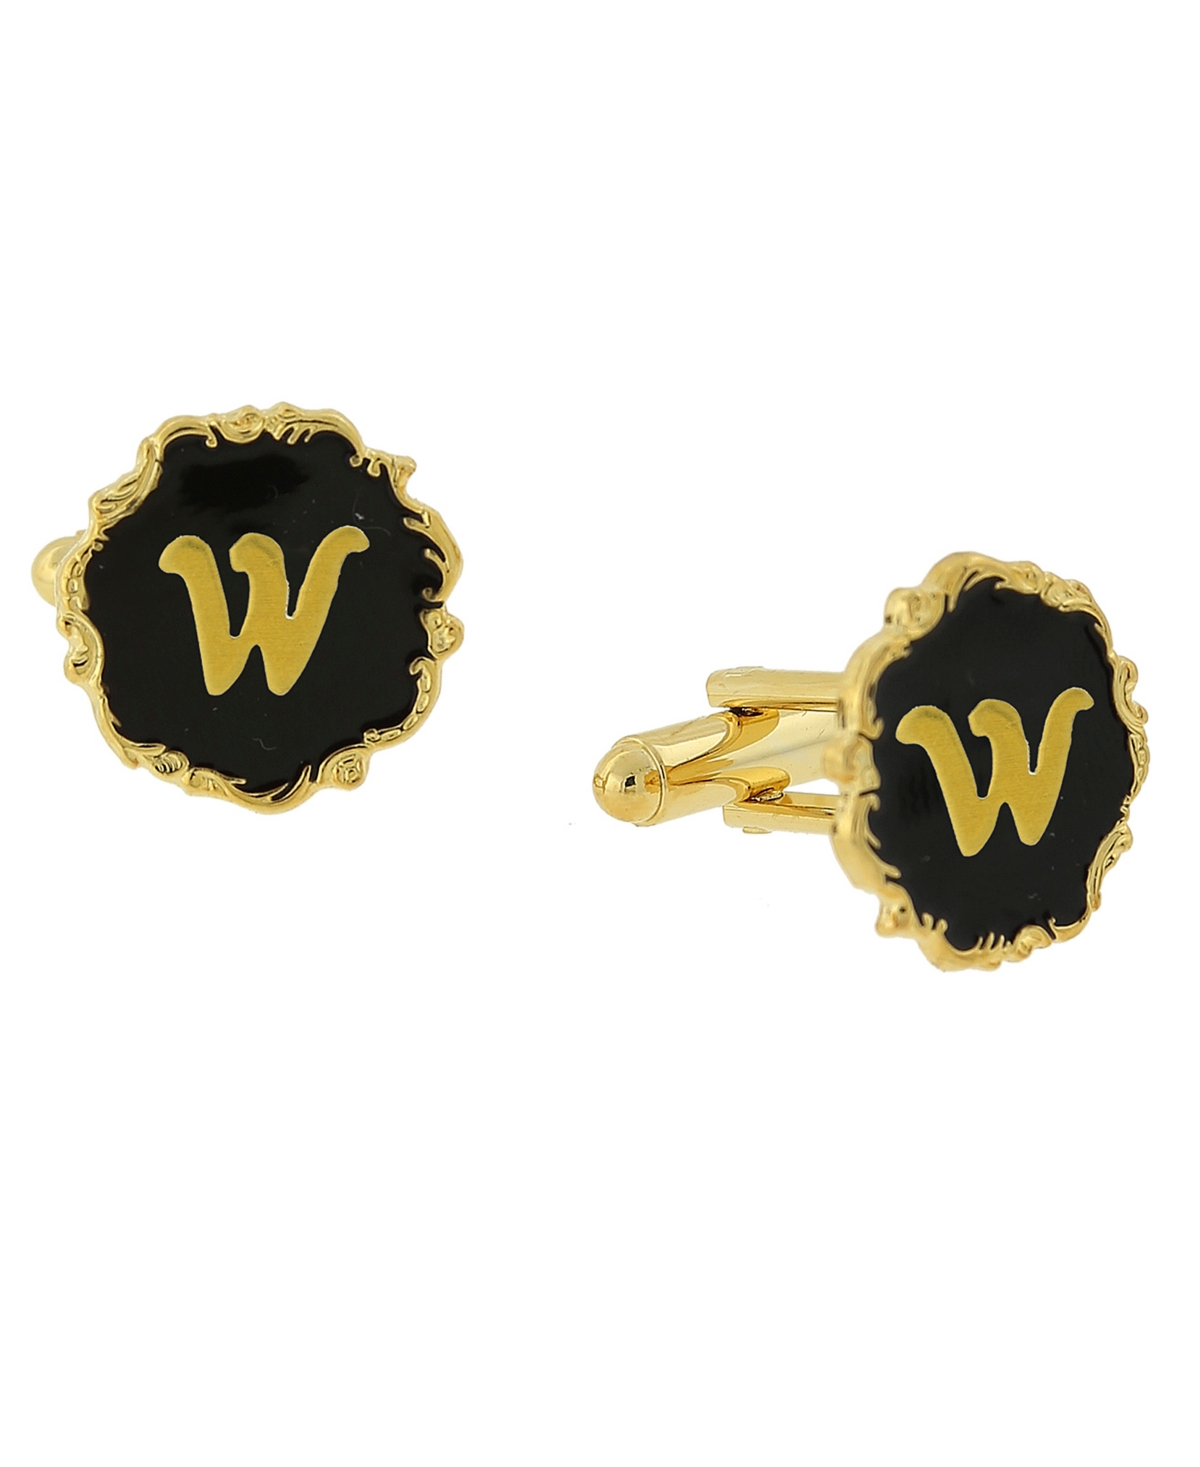 Jewelry 14K Gold-Plated Enamel Initial W Cufflinks - Black